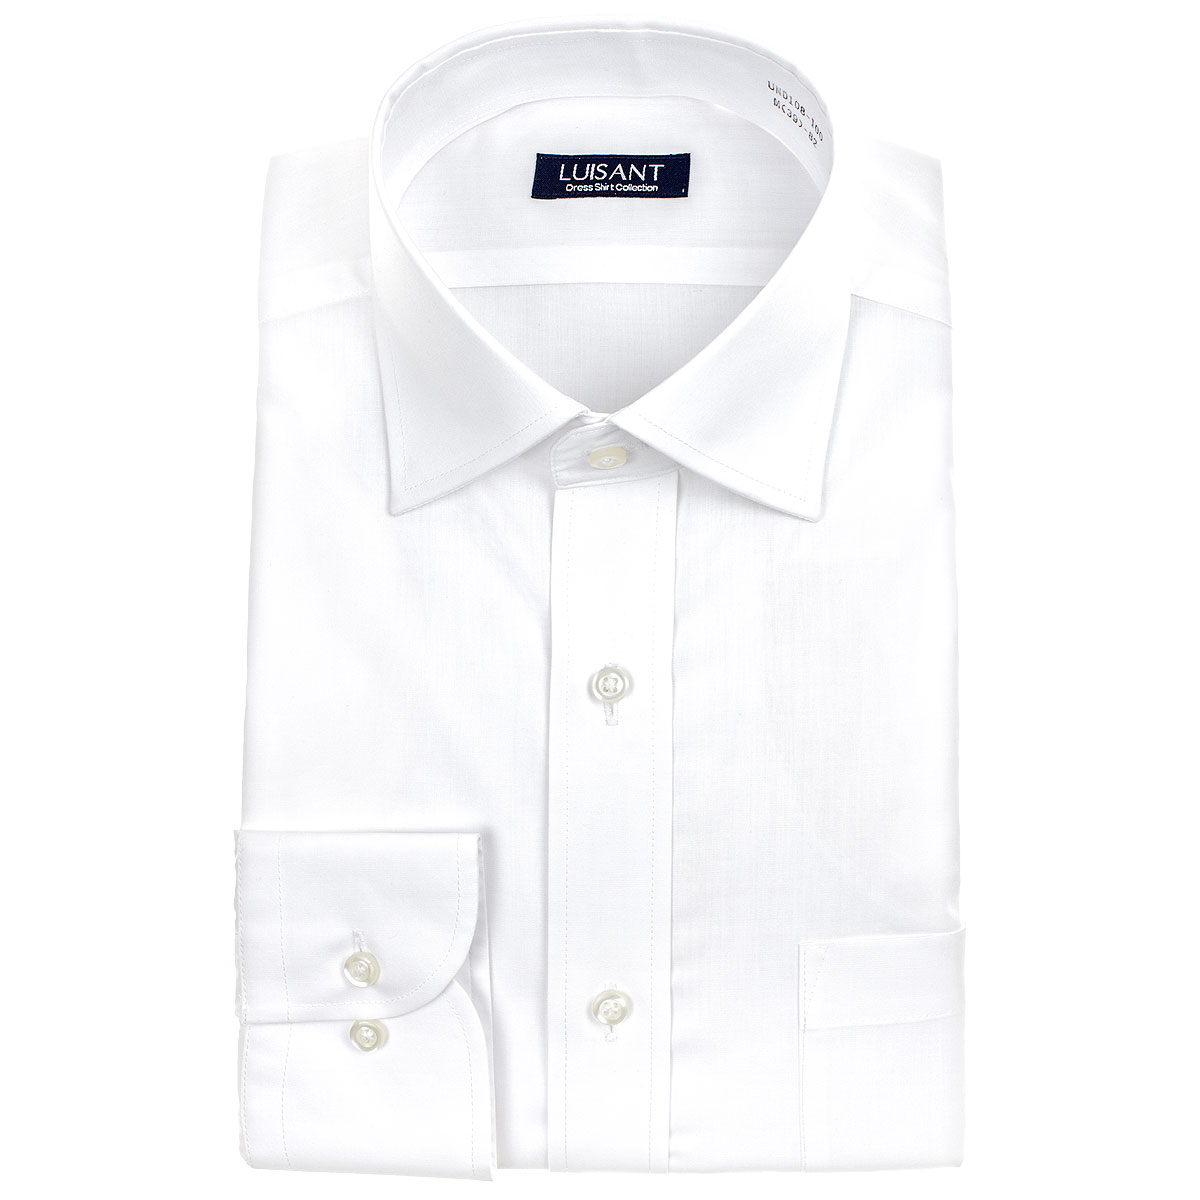 白ワイシャツ 長袖5枚セット 1枚あたり1199円 形態安定 標準体 ワイシャツ 送料込み［5枚セット/3枚セット/単品購入OK］